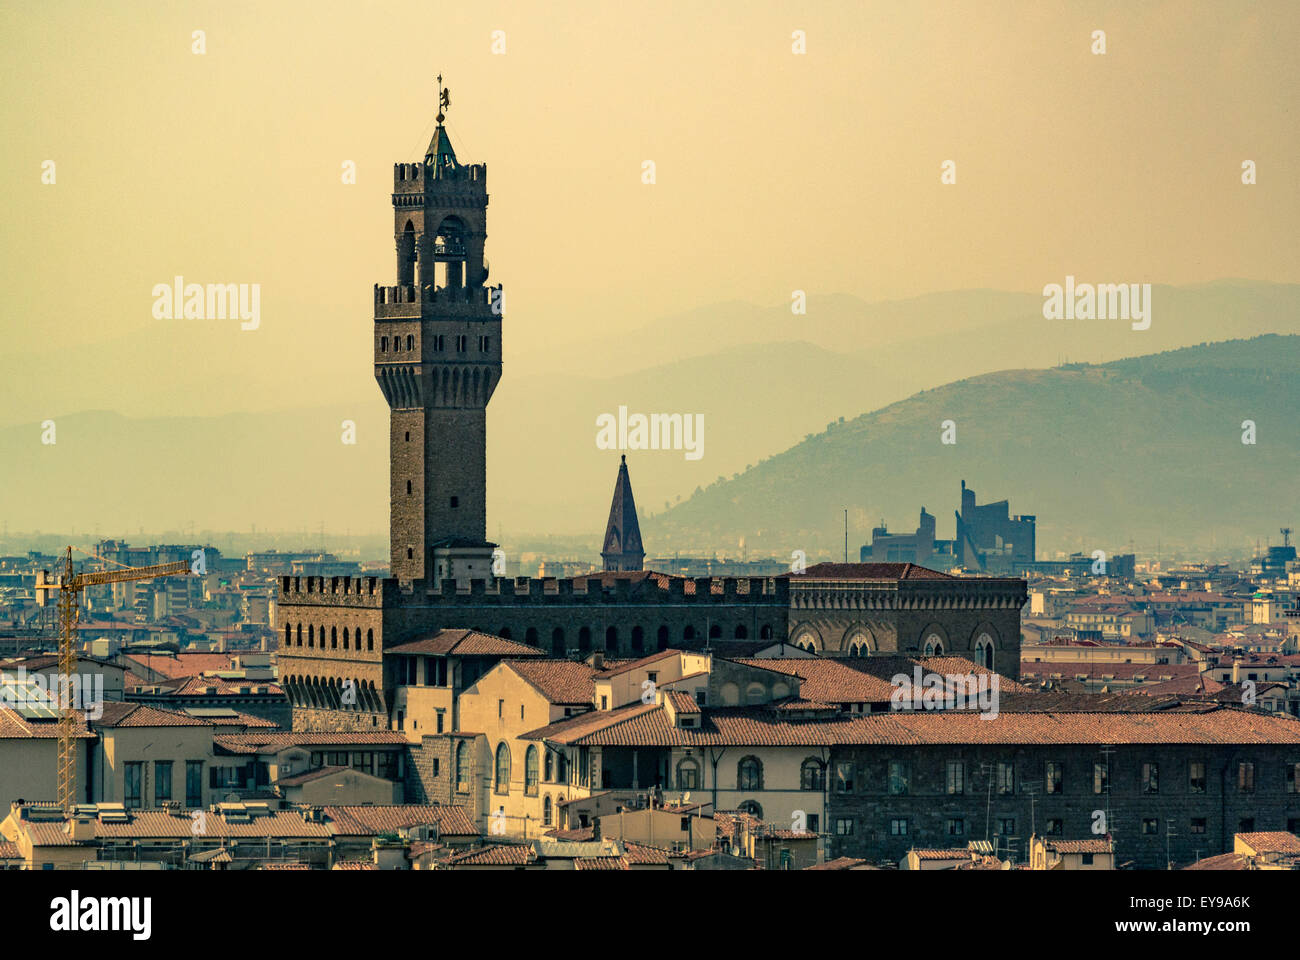 Palazzo Vecchio overlooking Piazza della Signoria. Florence, Italy. Stock Photo